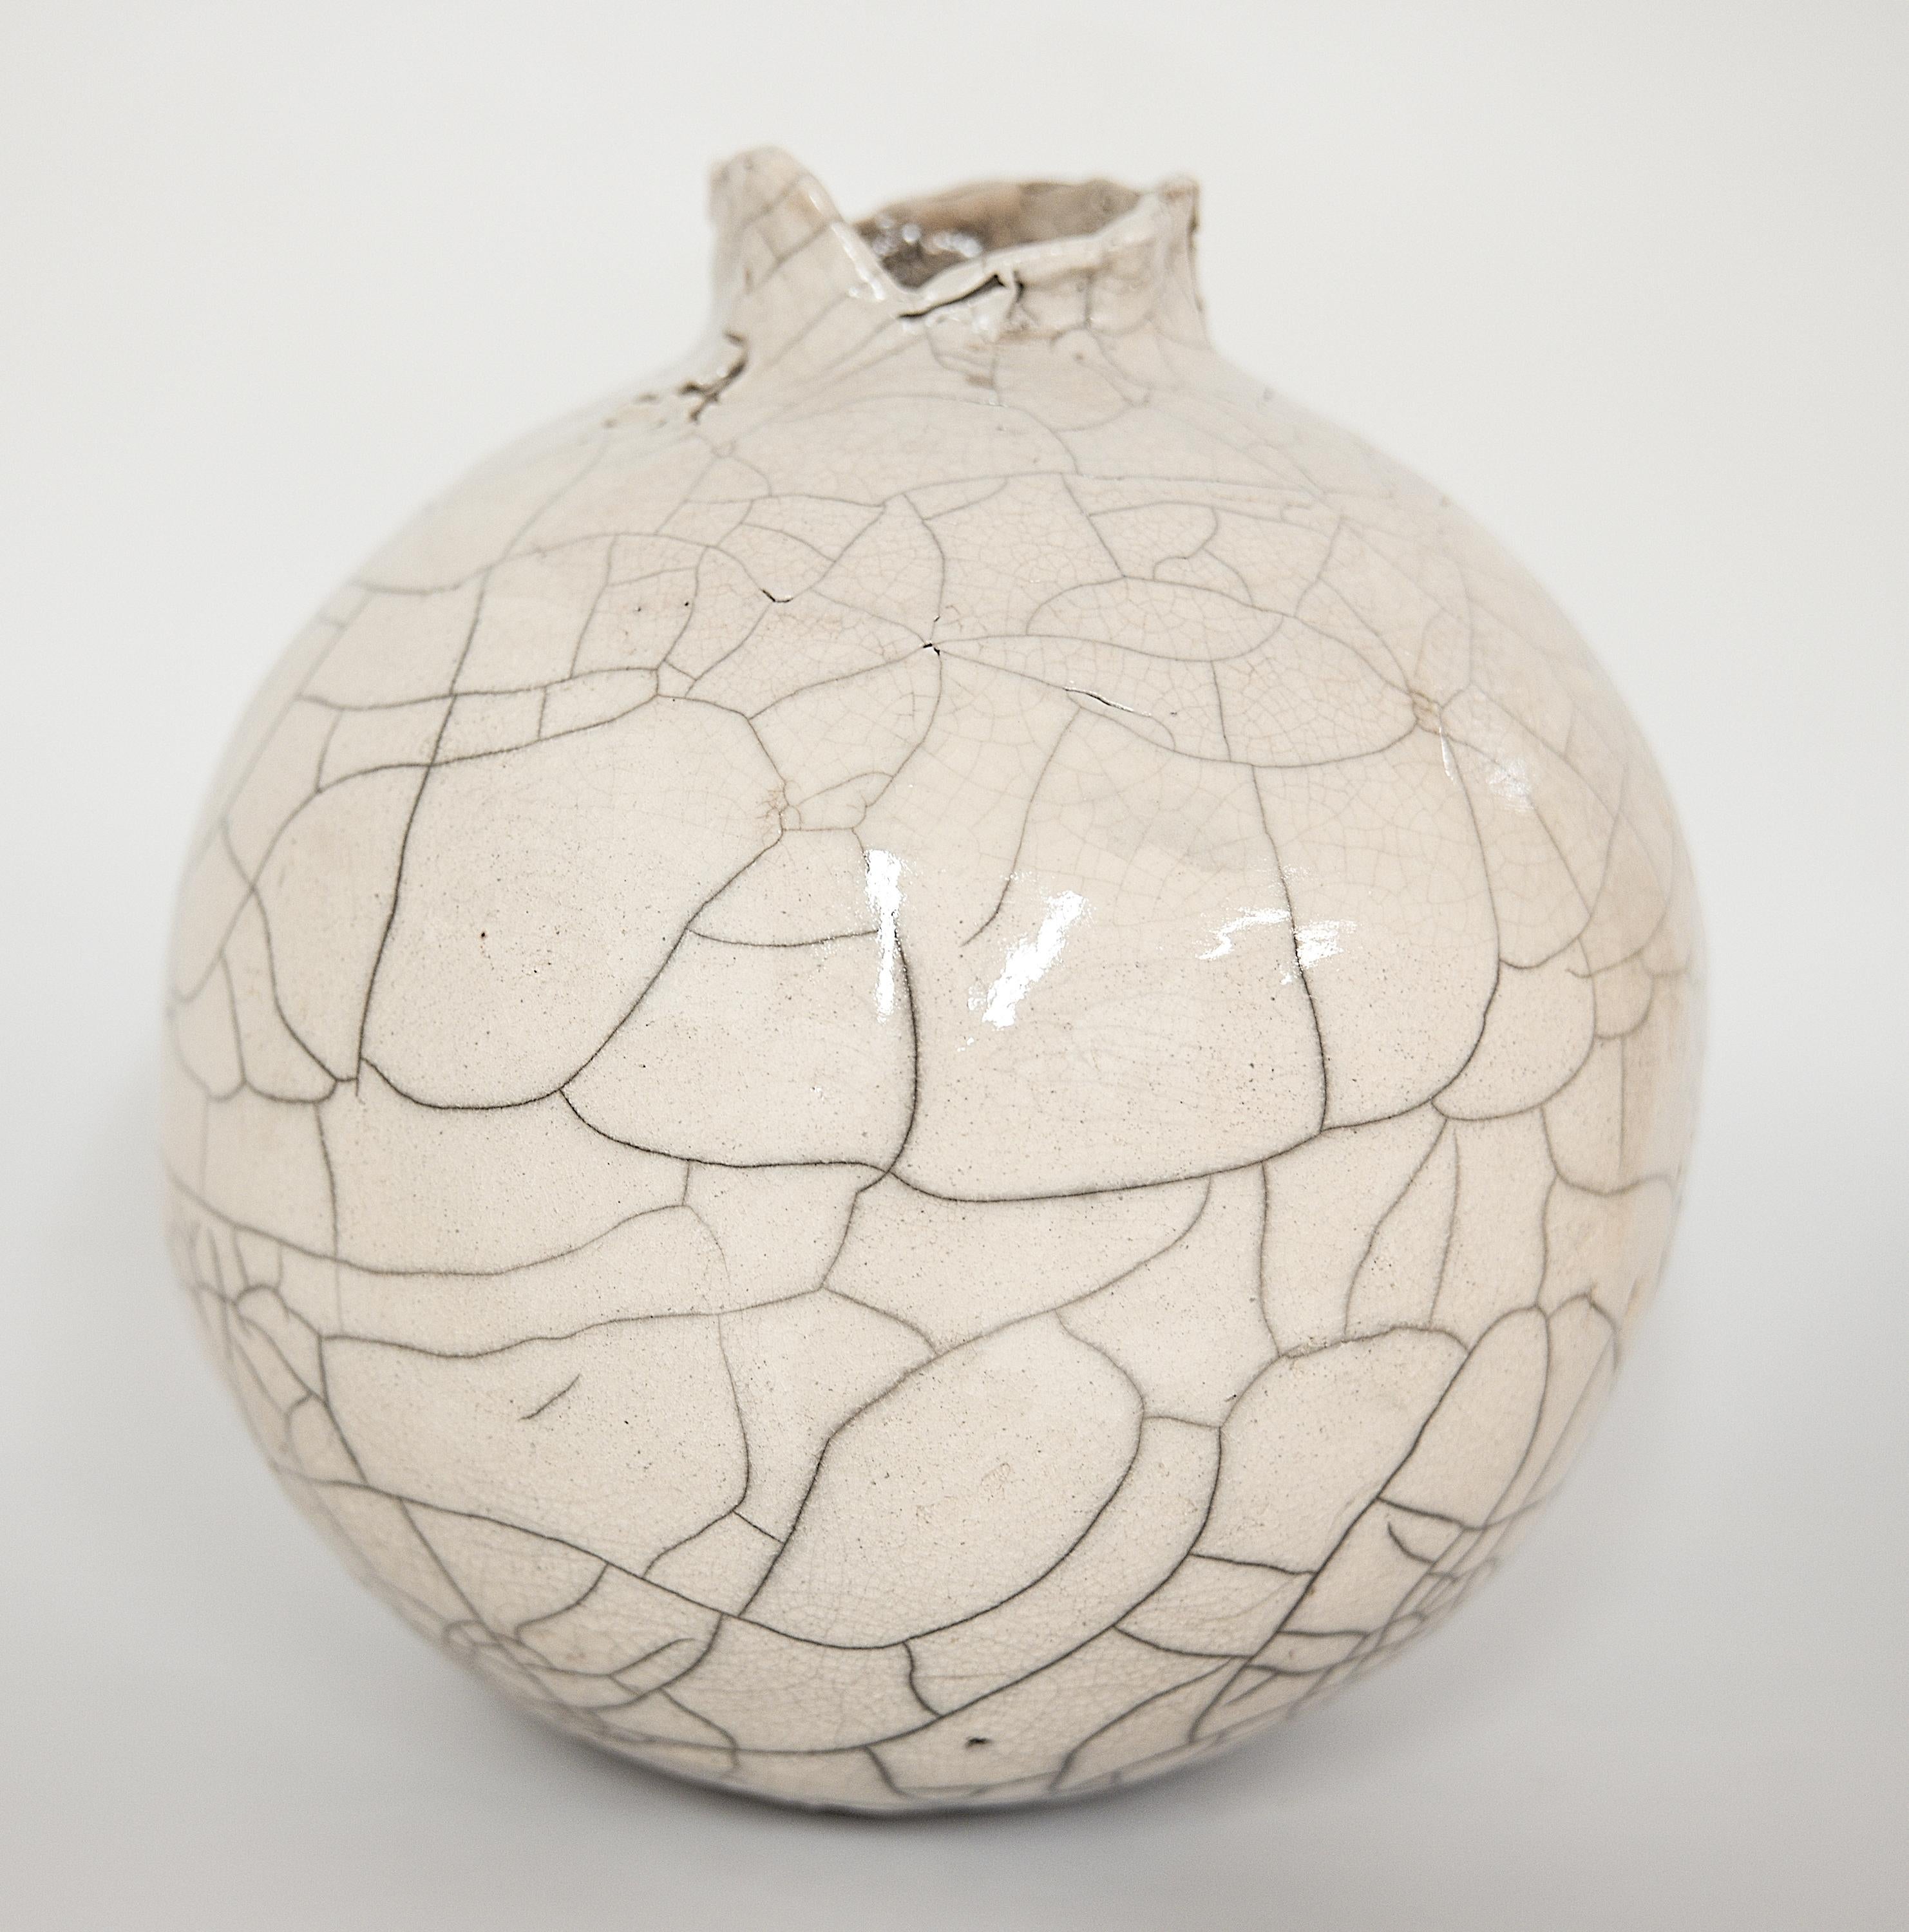 Diese einzigartige White Crackle Raku Moon Vase wird mit der RAKU-Technik gebrannt. Die cremefarbene Craquelé-Glasur sorgt für eine besondere Ästhetik, aber sie ist nicht wasserdicht, so dass eine Unterlage für die Aufbewahrung von Wasser zum